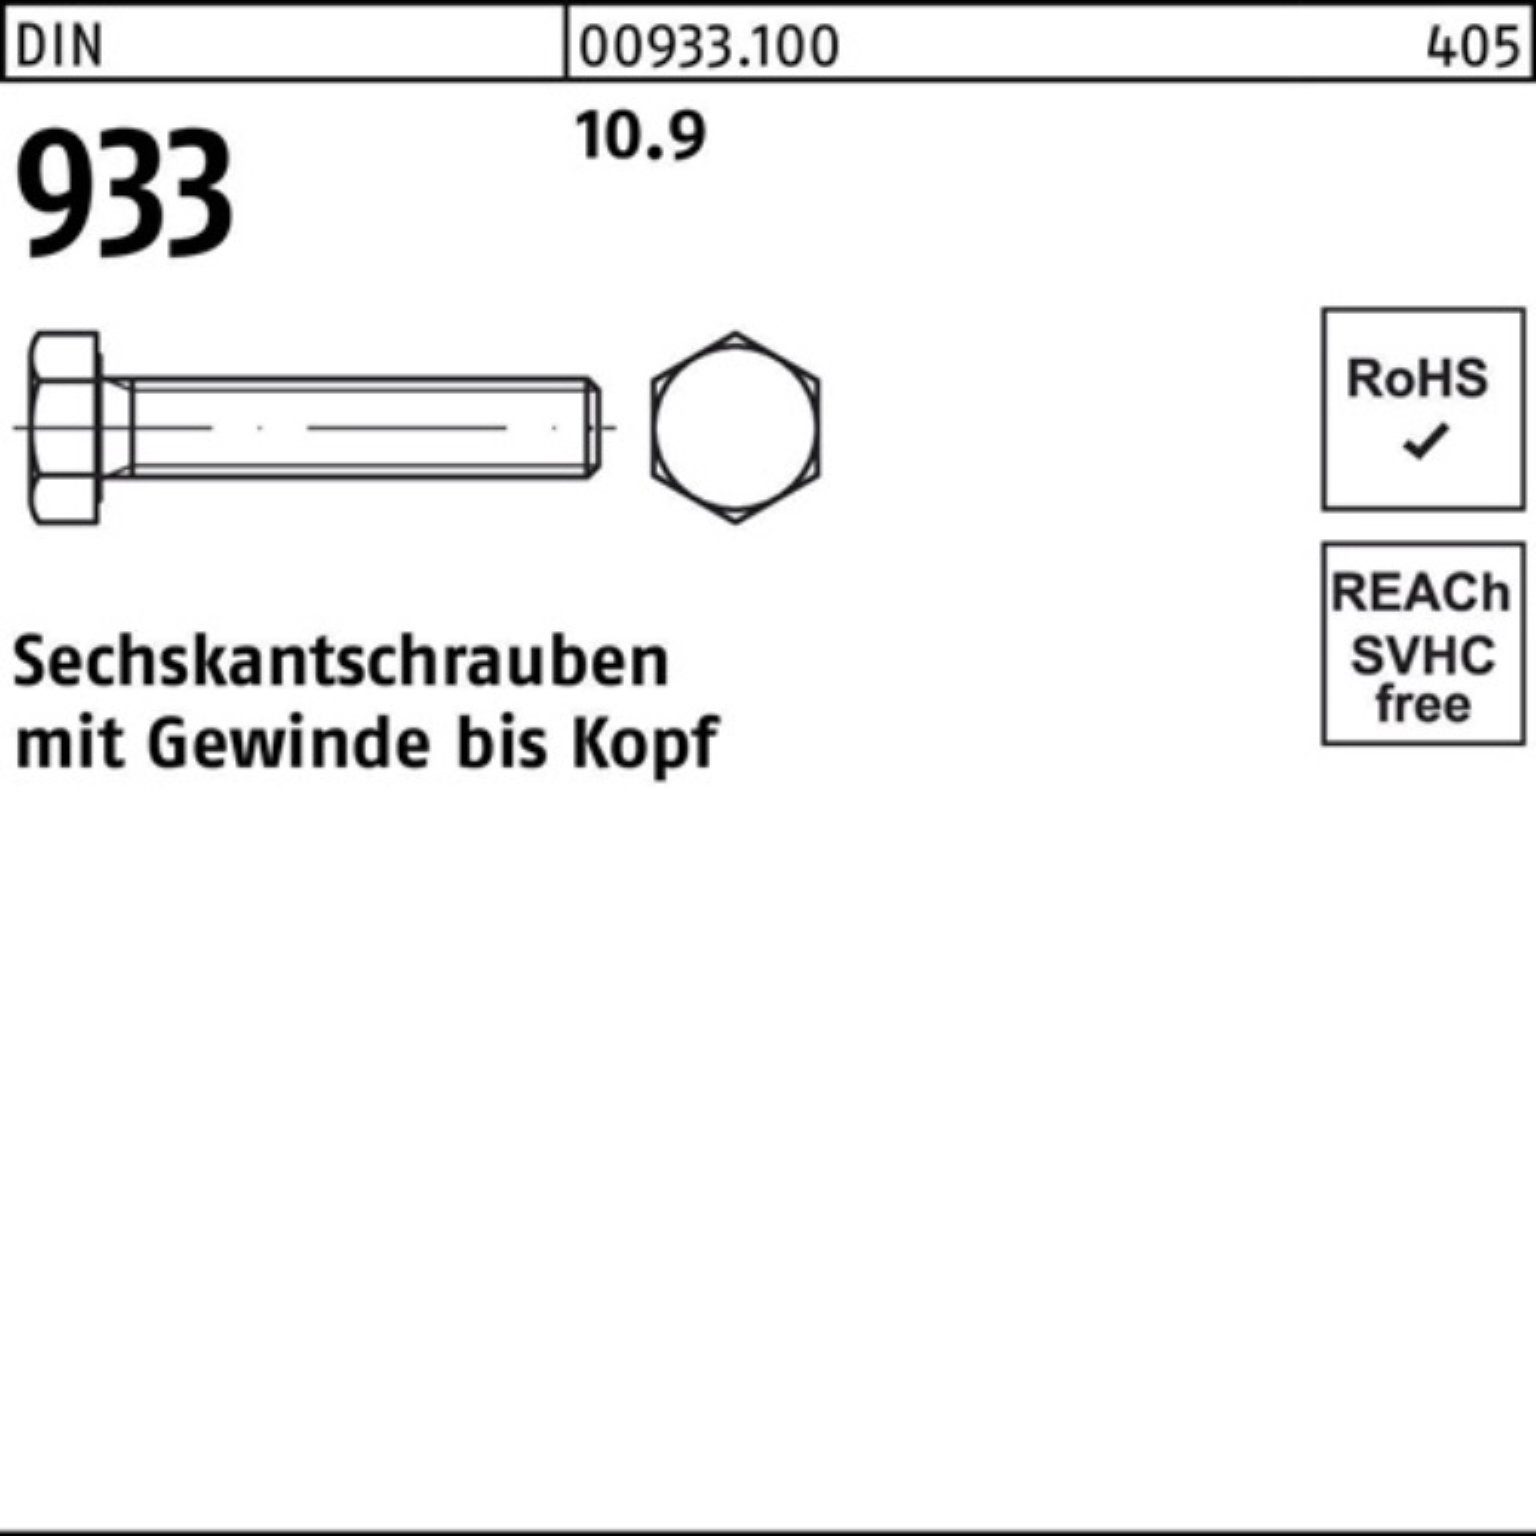 Reyher Sechskantschraube 100er DIN M20x Sechskantschraube 933 10.9 933 DIN Pack 55 Stück VG 25